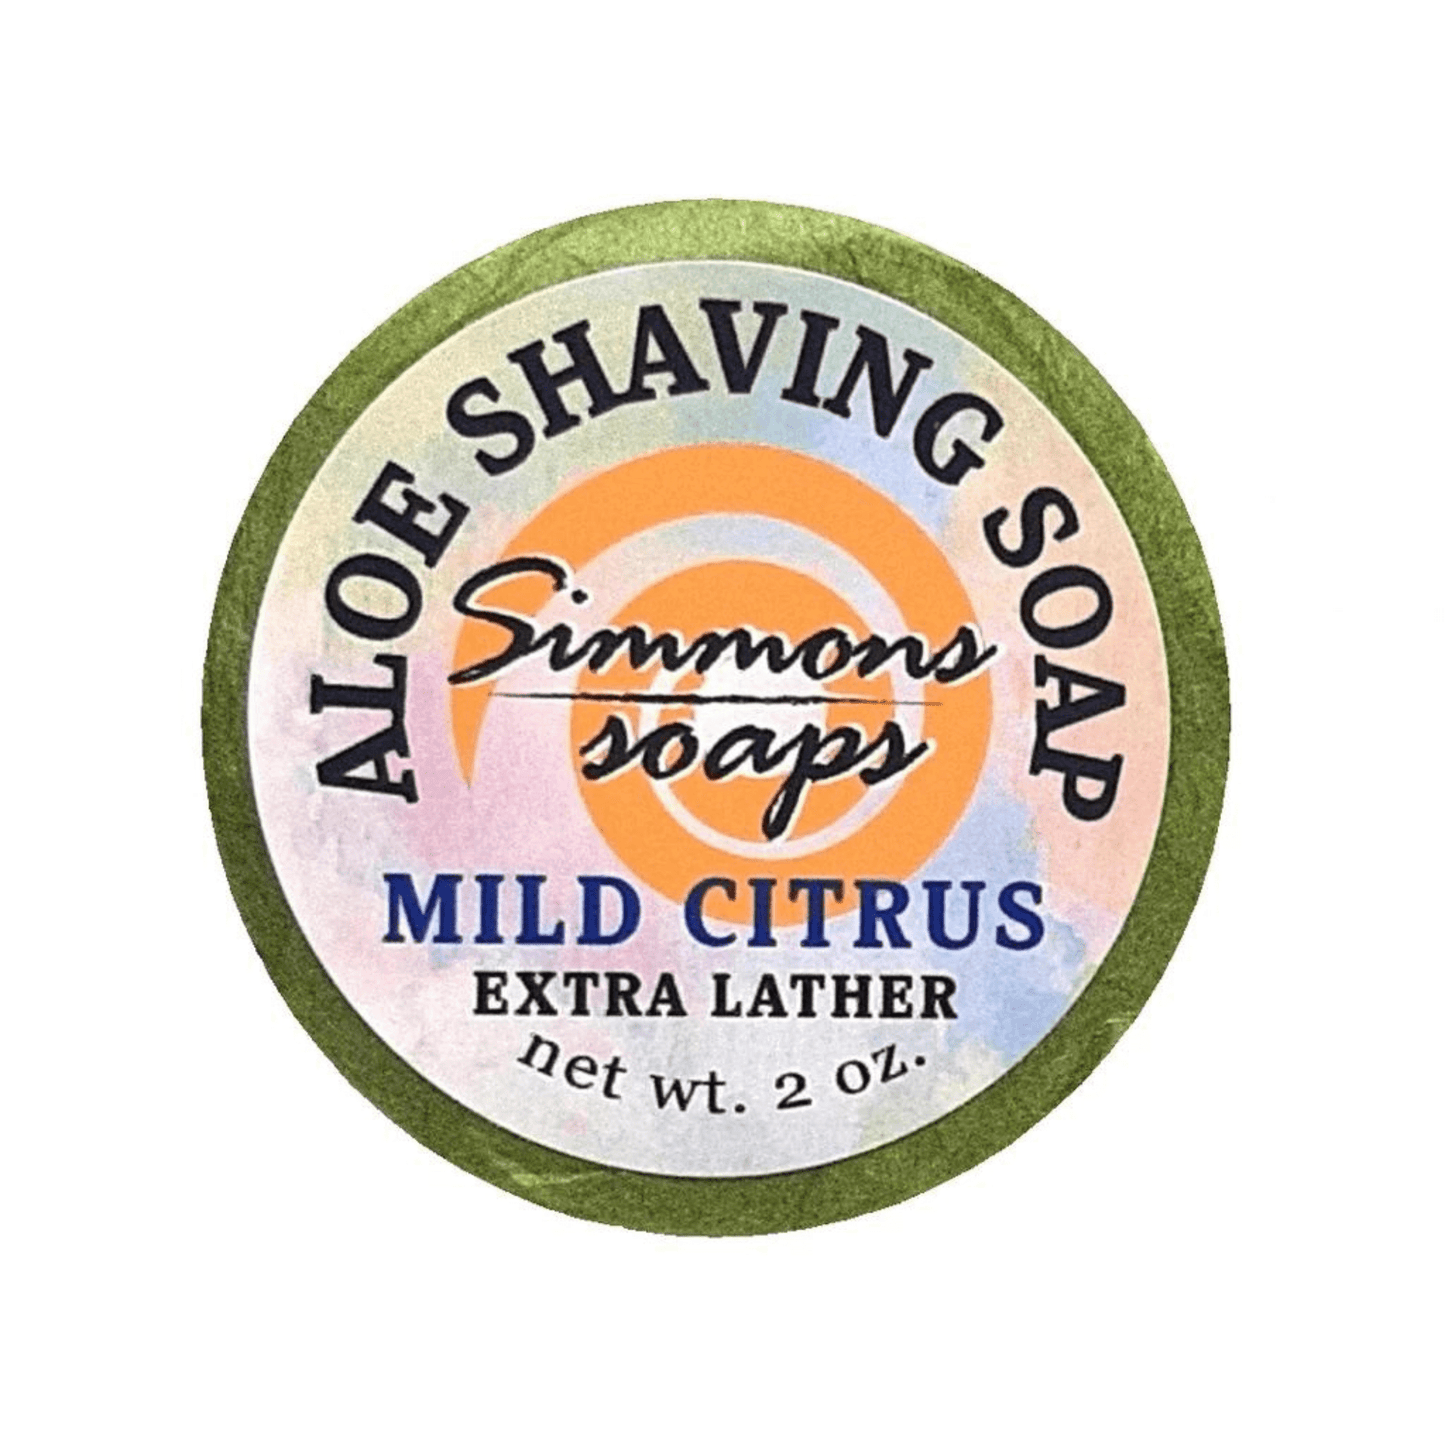 Primary Image of Mild Citrus Shaving Soap